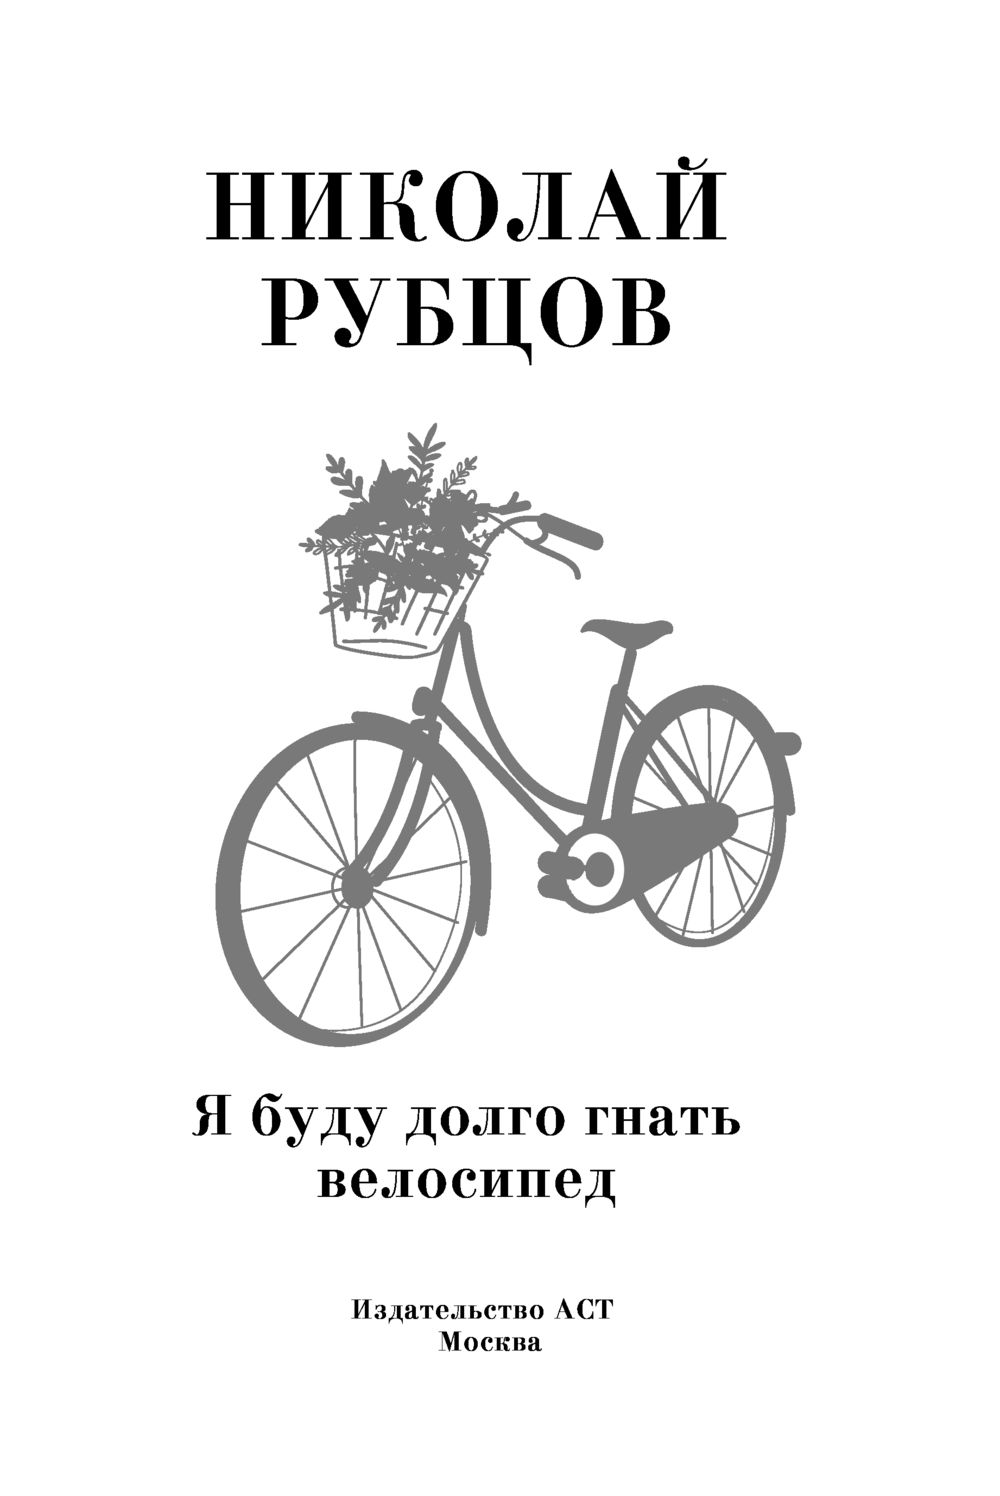 Я долго буду гнать велосипед слушать барыкин. Рубцов велосипед. Я буду долго гнать велосипед. Я буду долго гнать велосипед картинки.